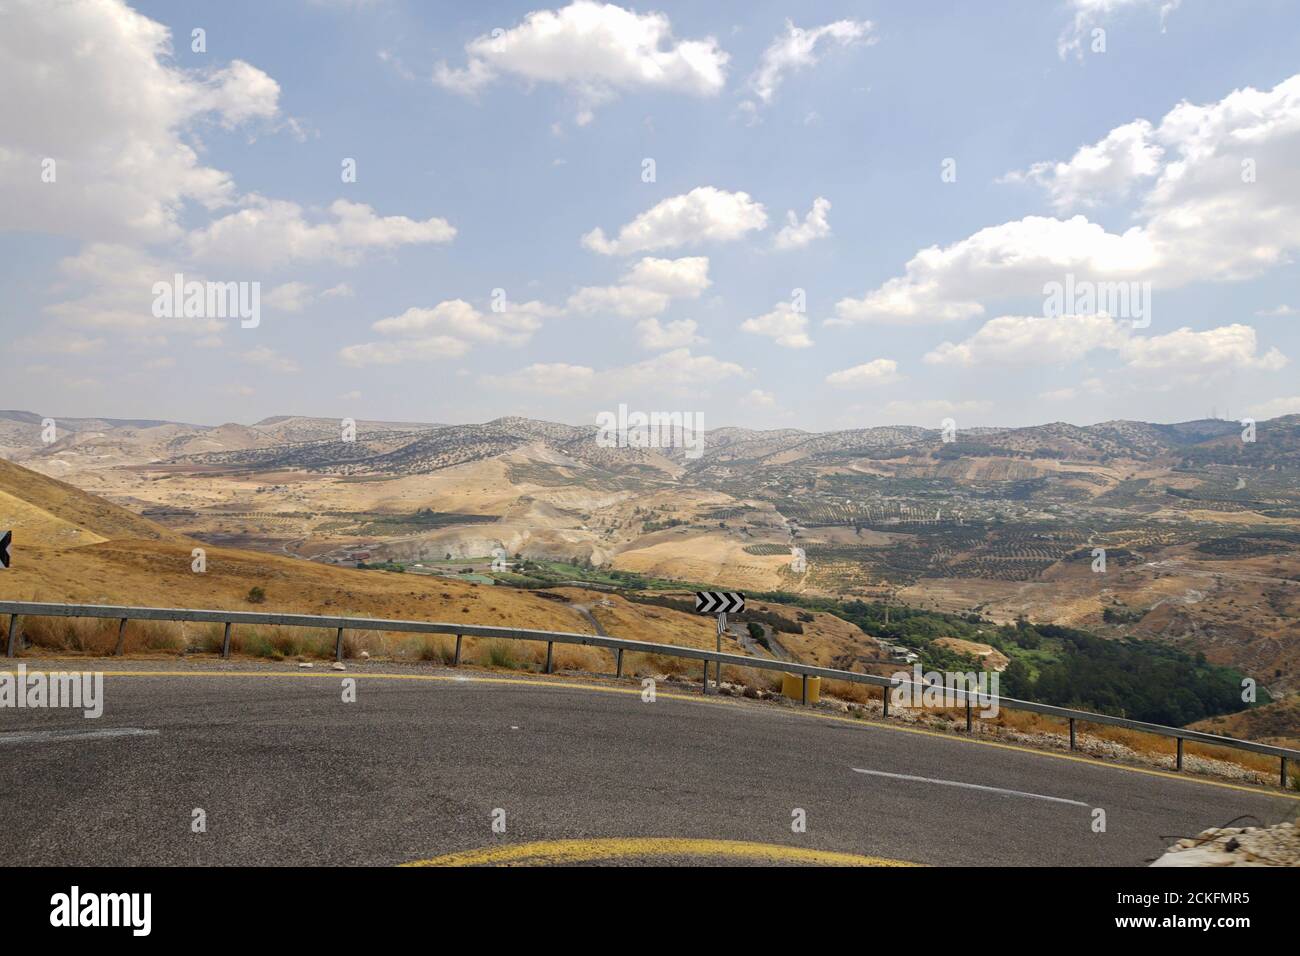 La vue sur le Golan depuis la réserve naturelle de Gamla et le second Temple, ville juive antique sur les hauteurs du Golan, Israël Banque D'Images